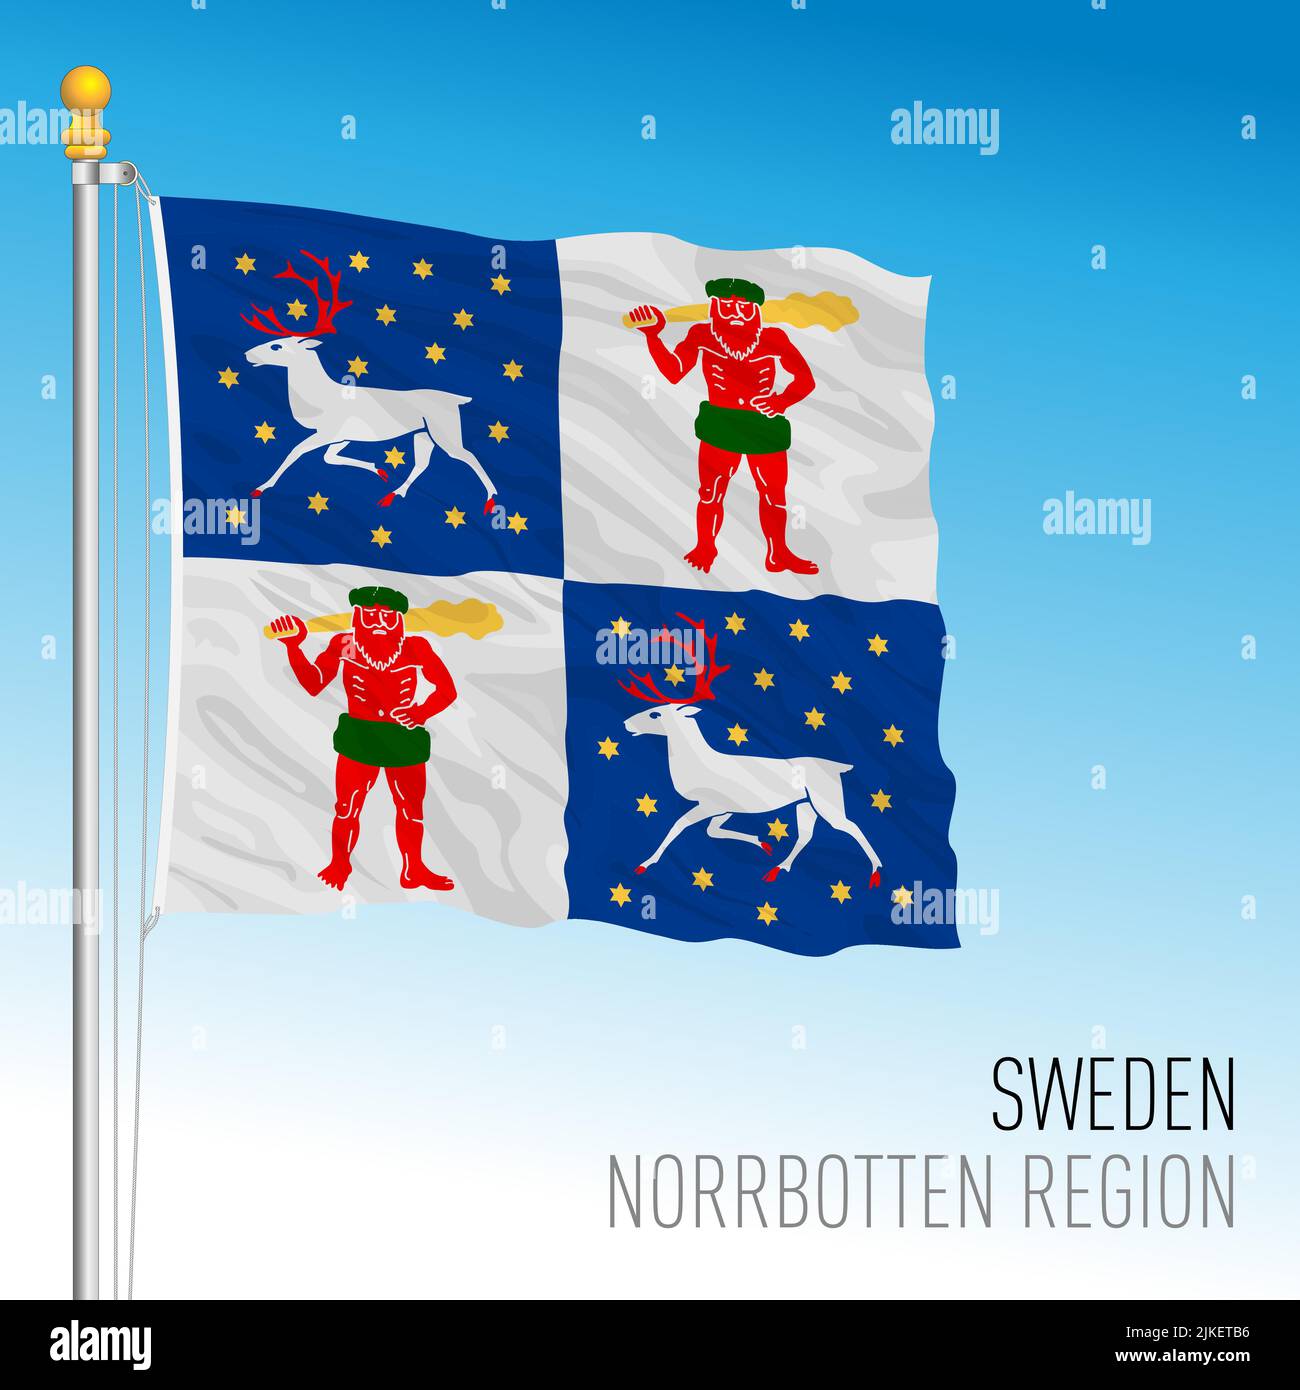 Bandera regional del condado de Norrbotten, Reino de Suecia, ilustración de vectores Ilustración del Vector